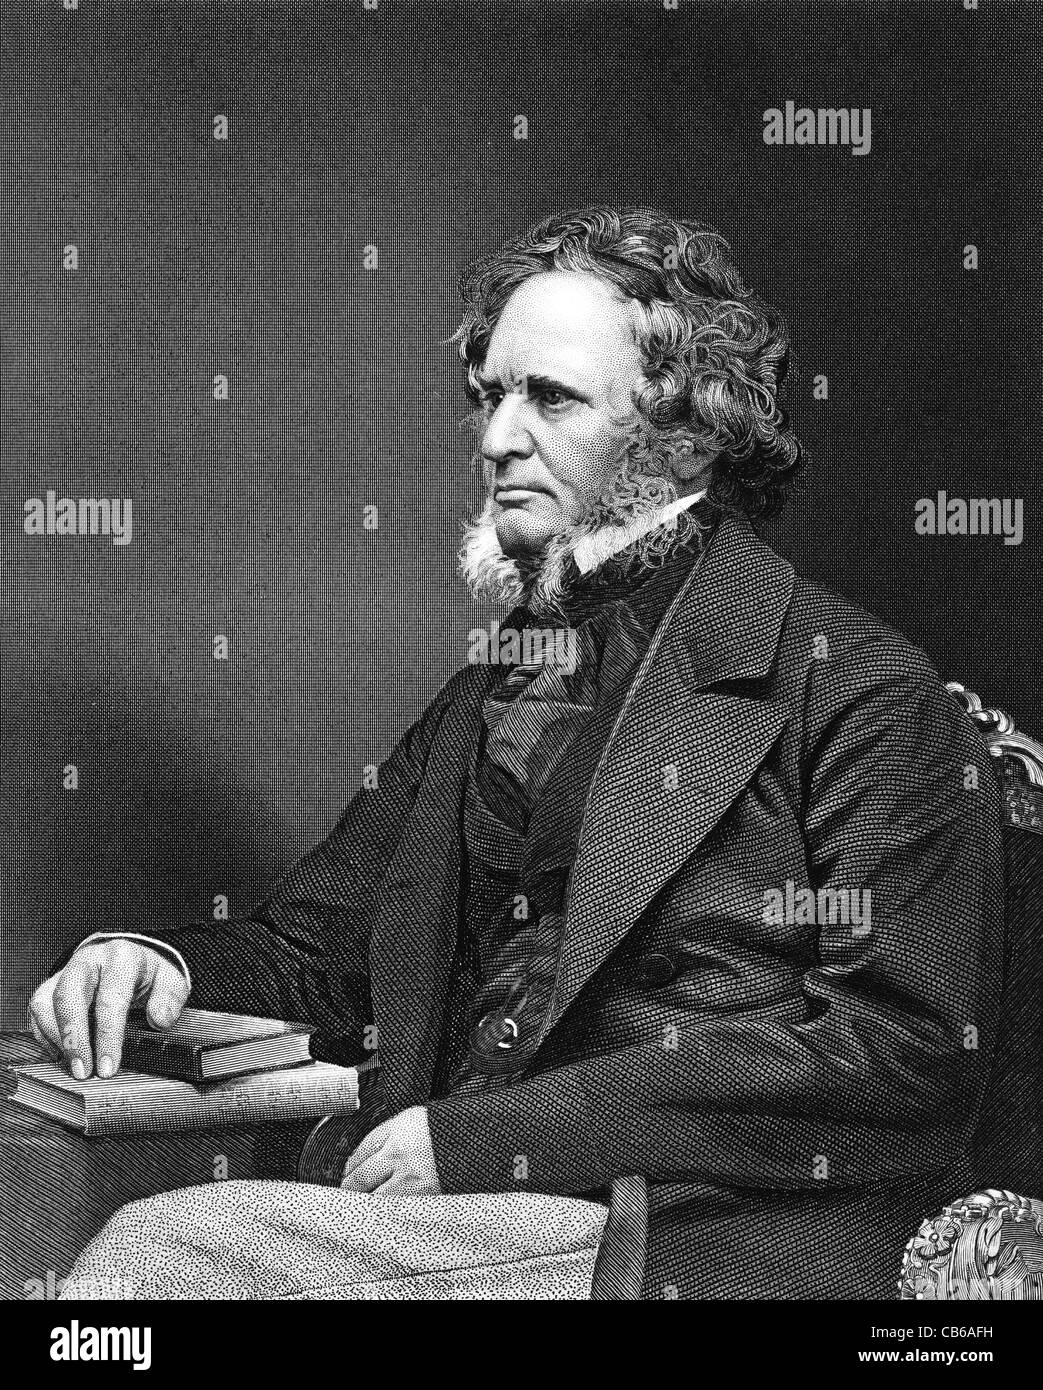 George Edward Geoffrey Smith Stanley, 14e comte de Derby KG PC (1799 - 1869) trois fois premier ministre et homme politique conservateur Banque D'Images